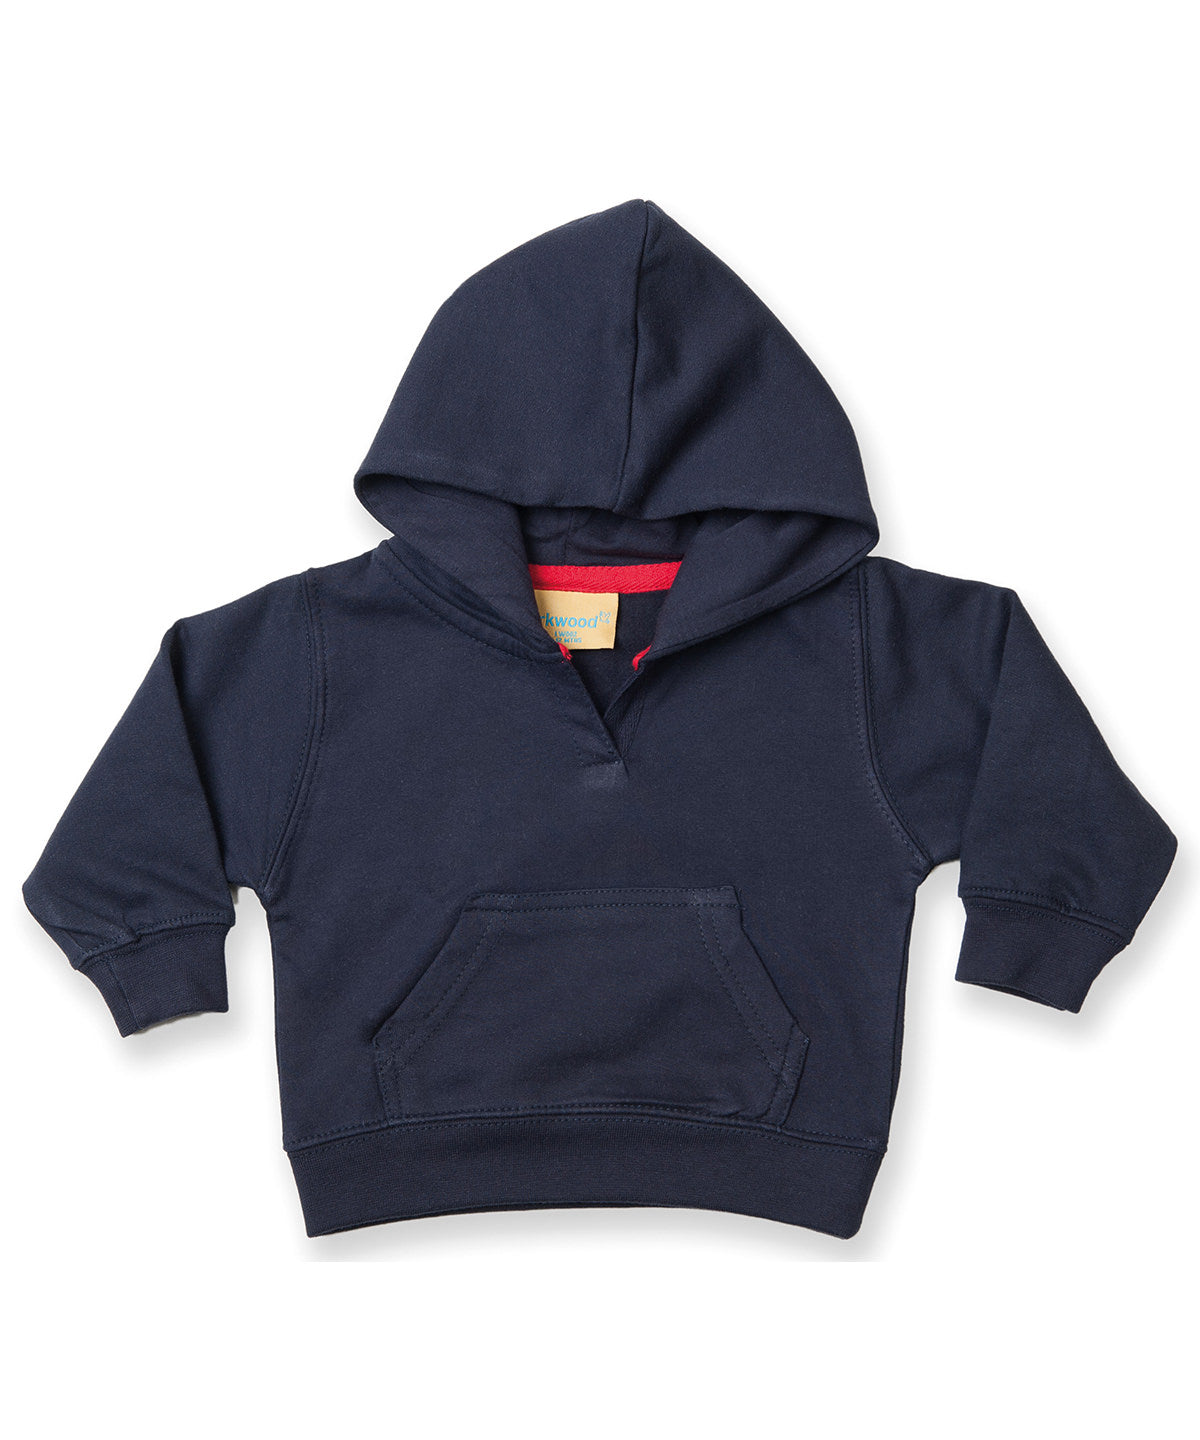 Personalised Hoodies - Black Larkwood Toddler hooded sweatshirt with kangaroo pocket